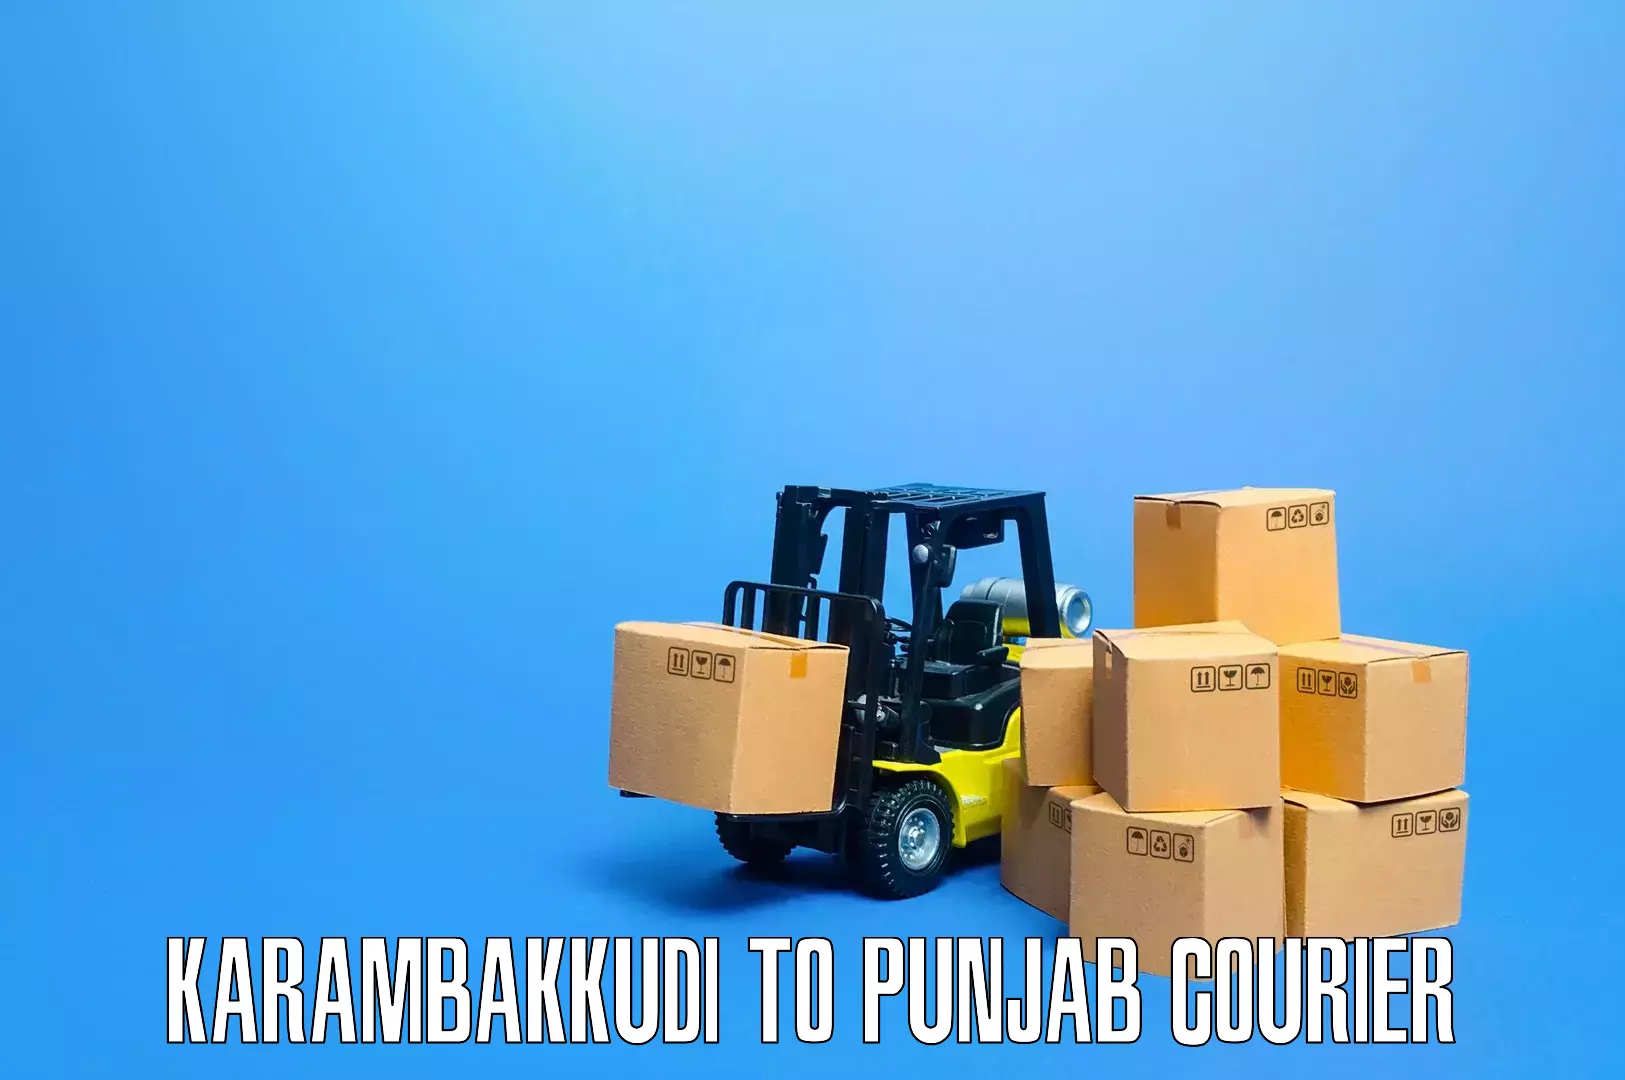 Nationwide furniture transport Karambakkudi to Patran